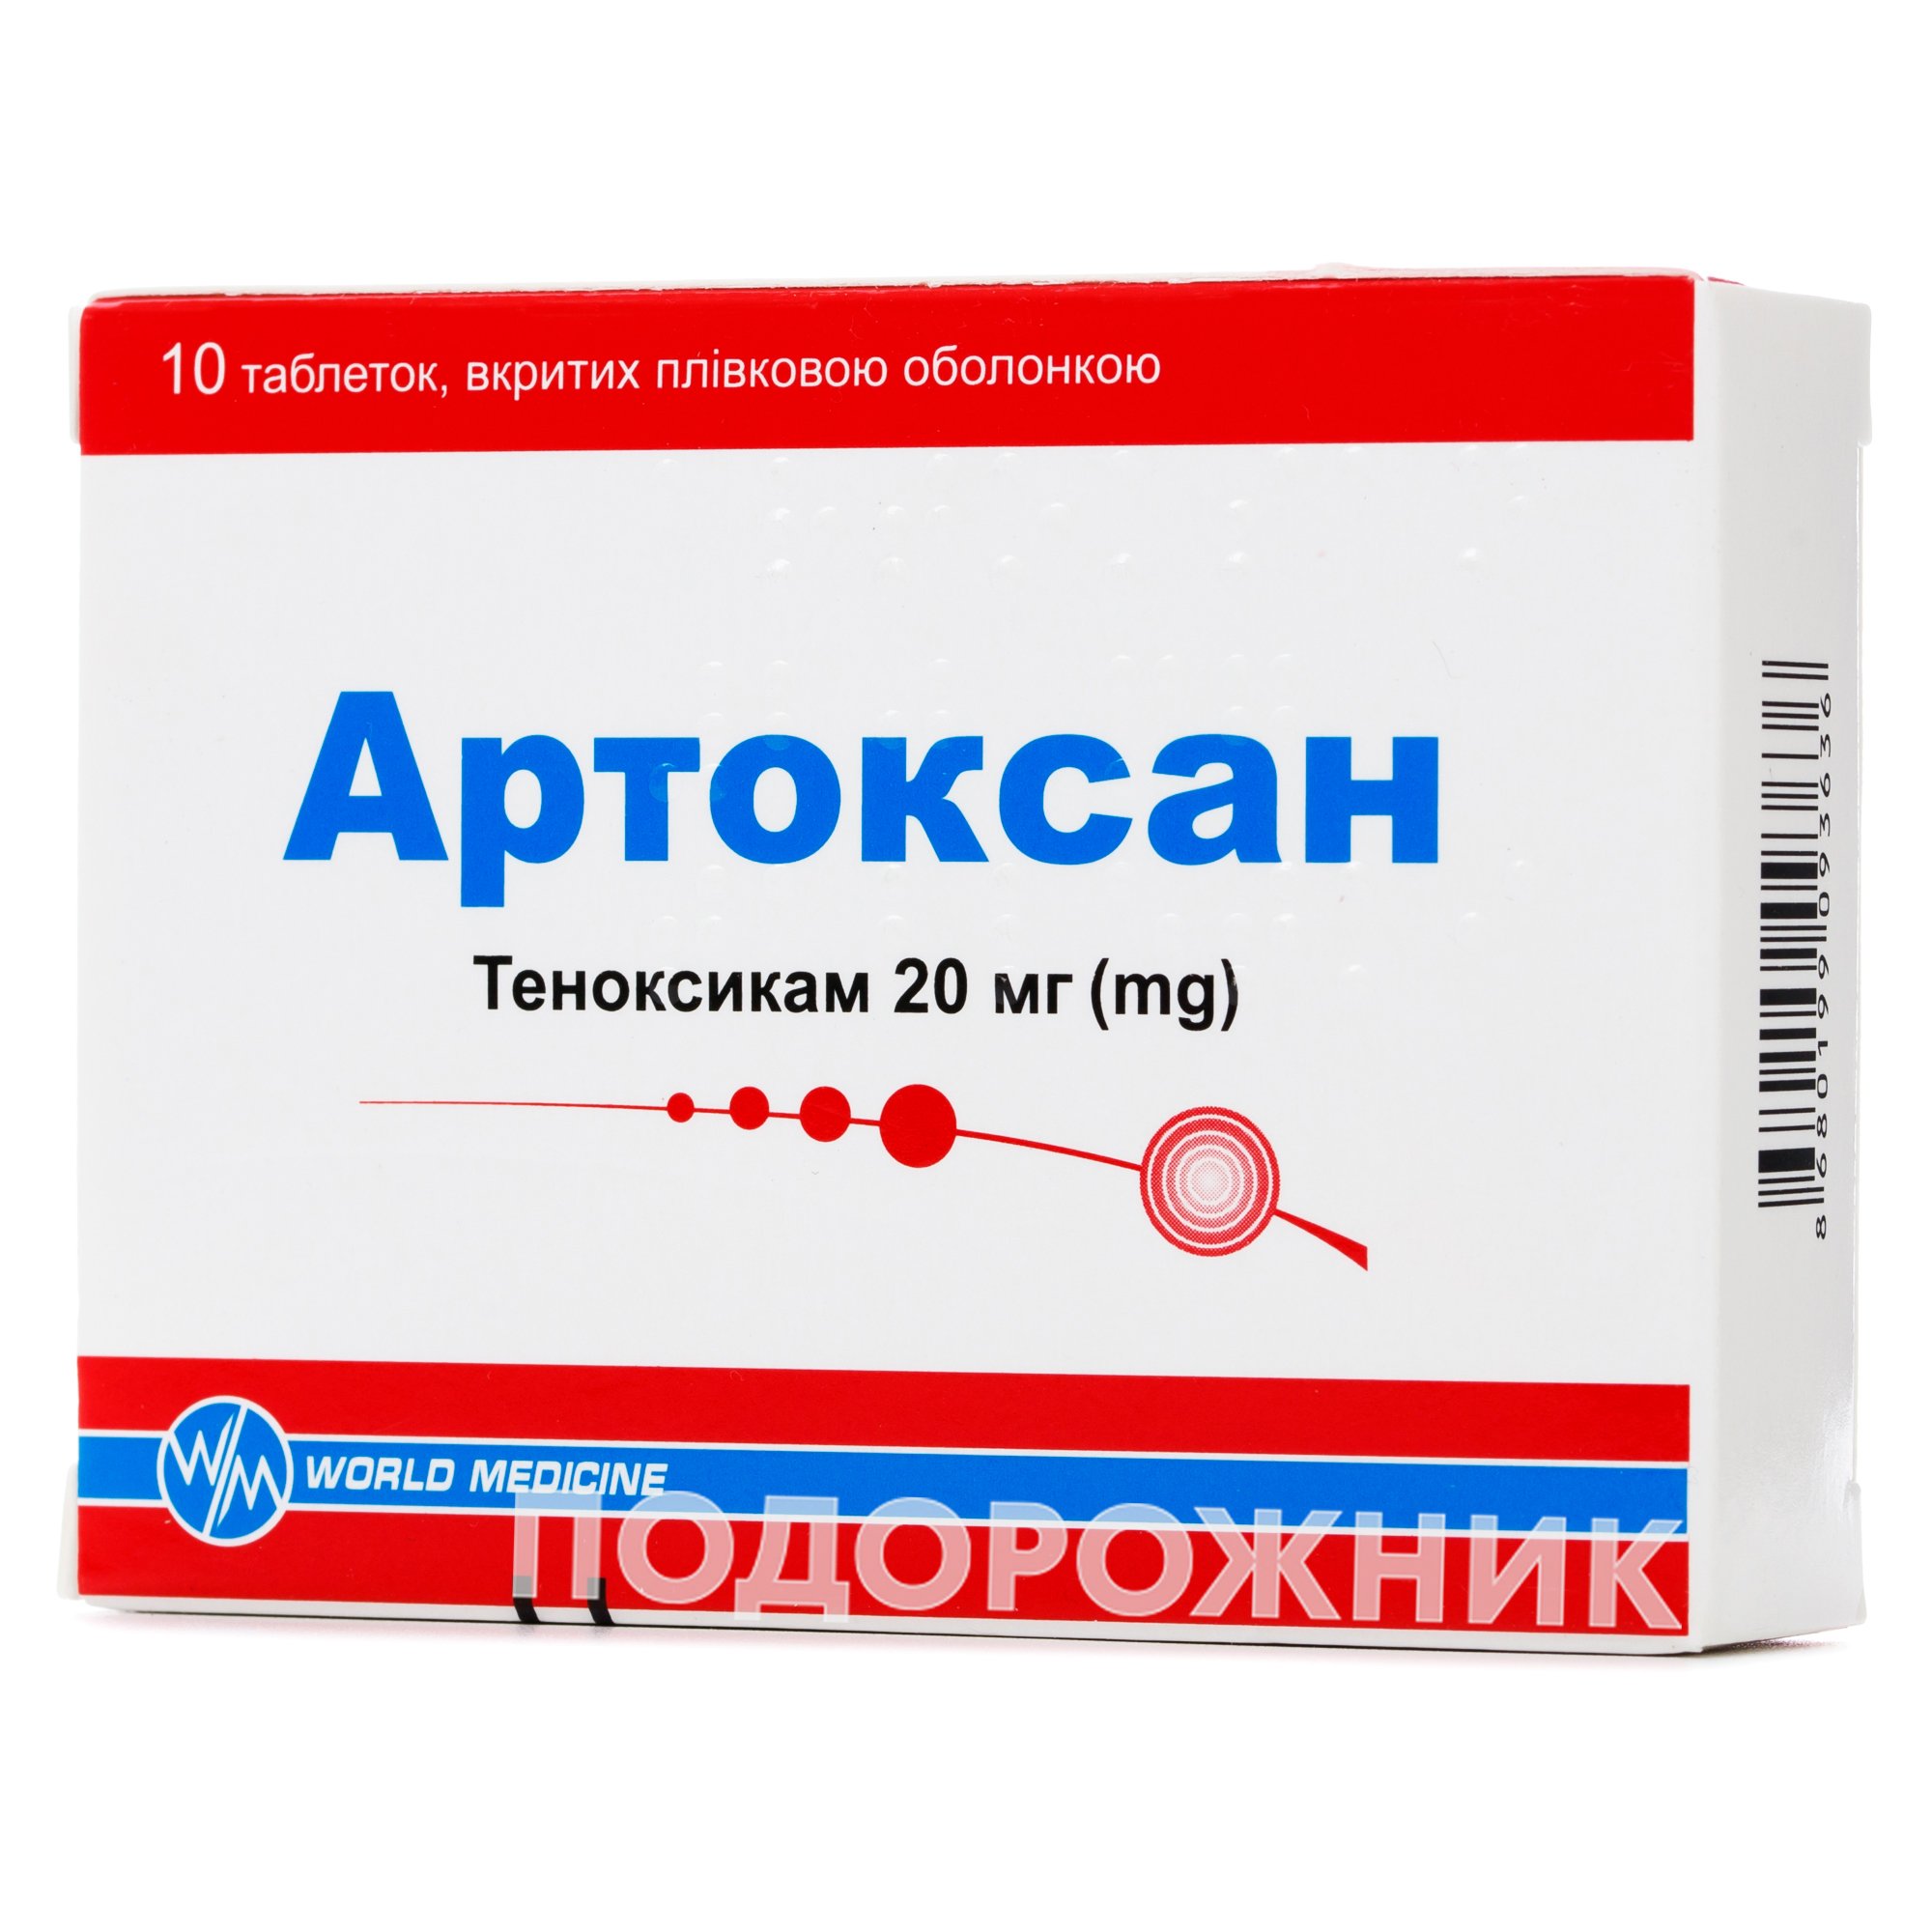 Артоксан уколы отзывы врачей. Артоксан 20 мг. Артоксан 20мг №10. Артоксан 2.0. Артоксан таб.